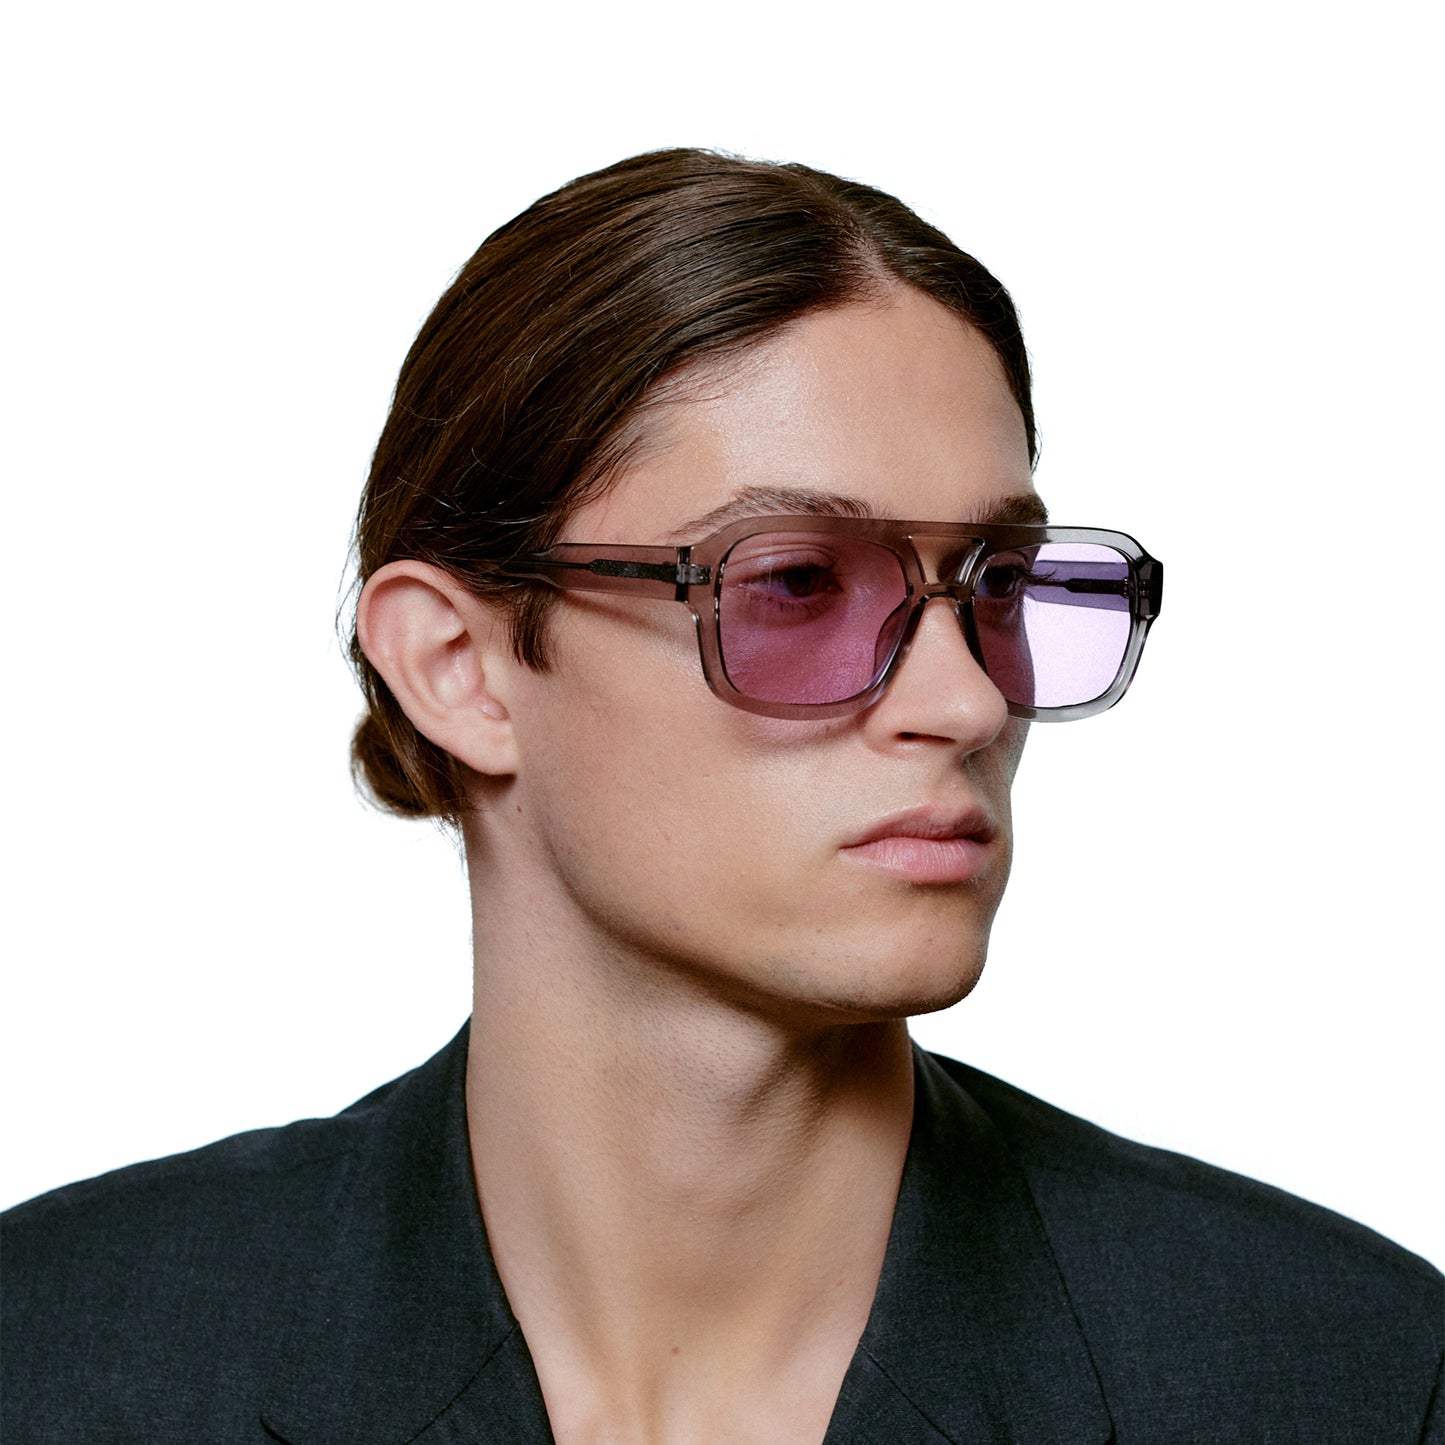 A.Kjaerbede Kaya Sunglasses in Grey Transparent color